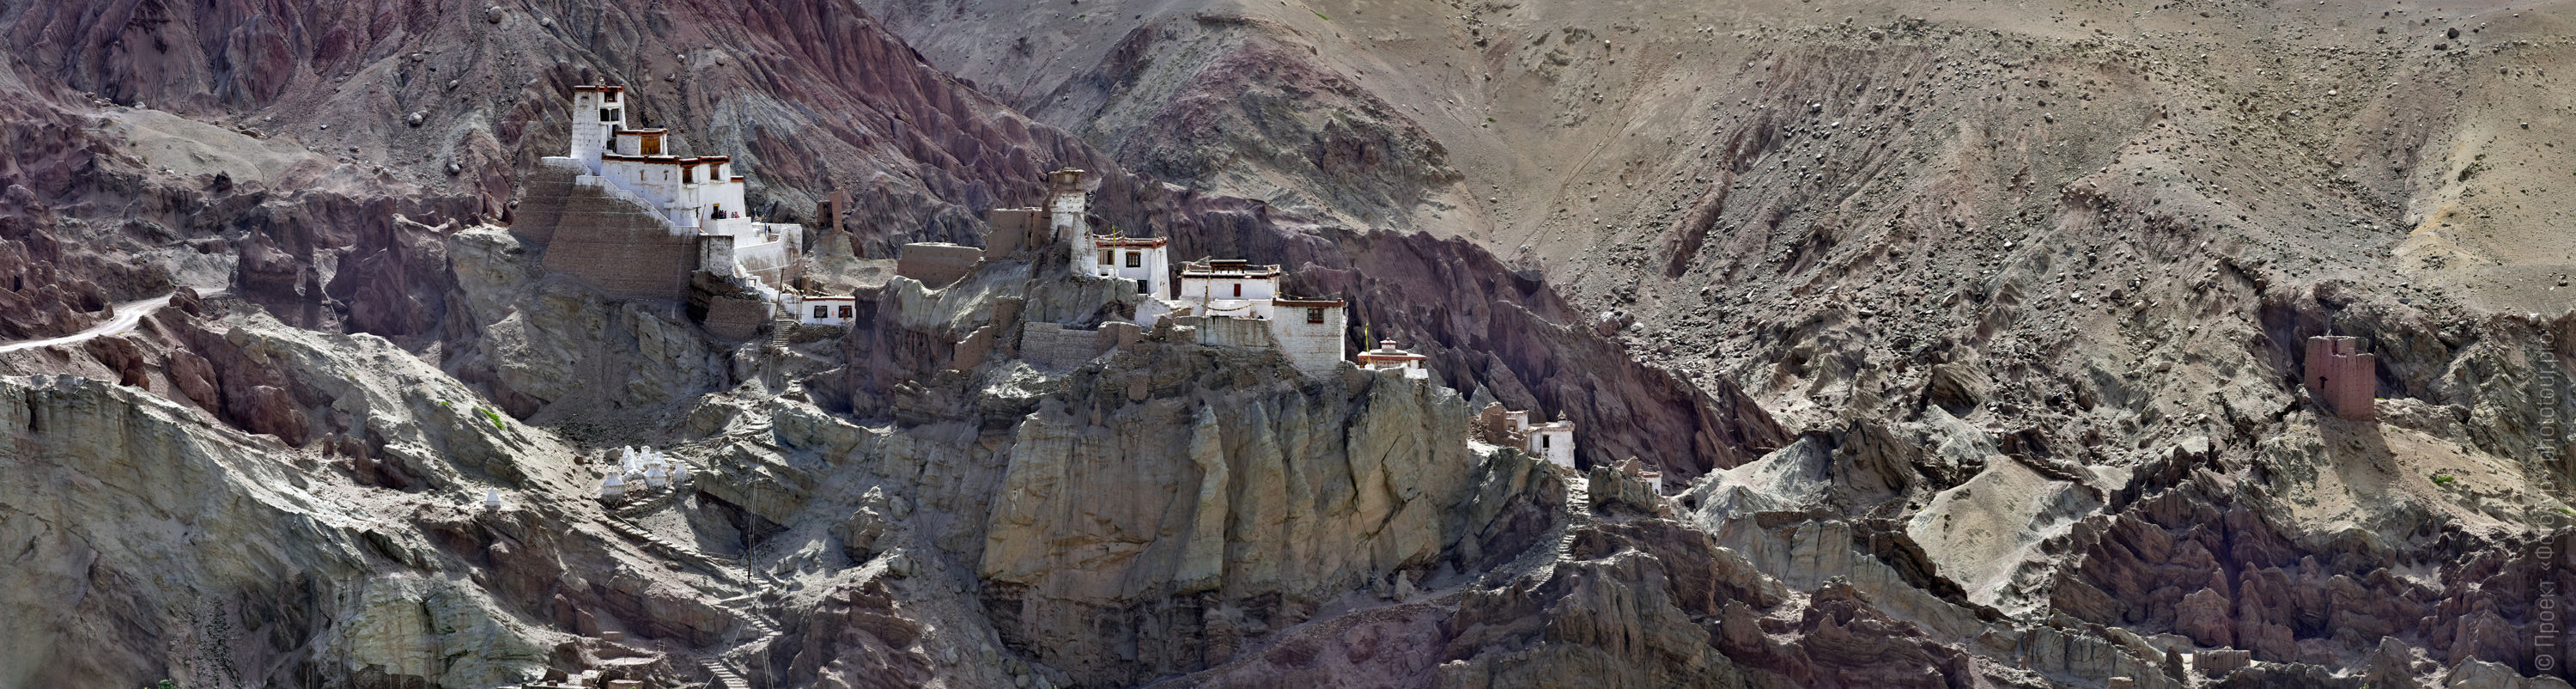 Buddhist monastery of Basgo Gonpa, Ladakhu women's tour, August 31 - September 14, 2019.